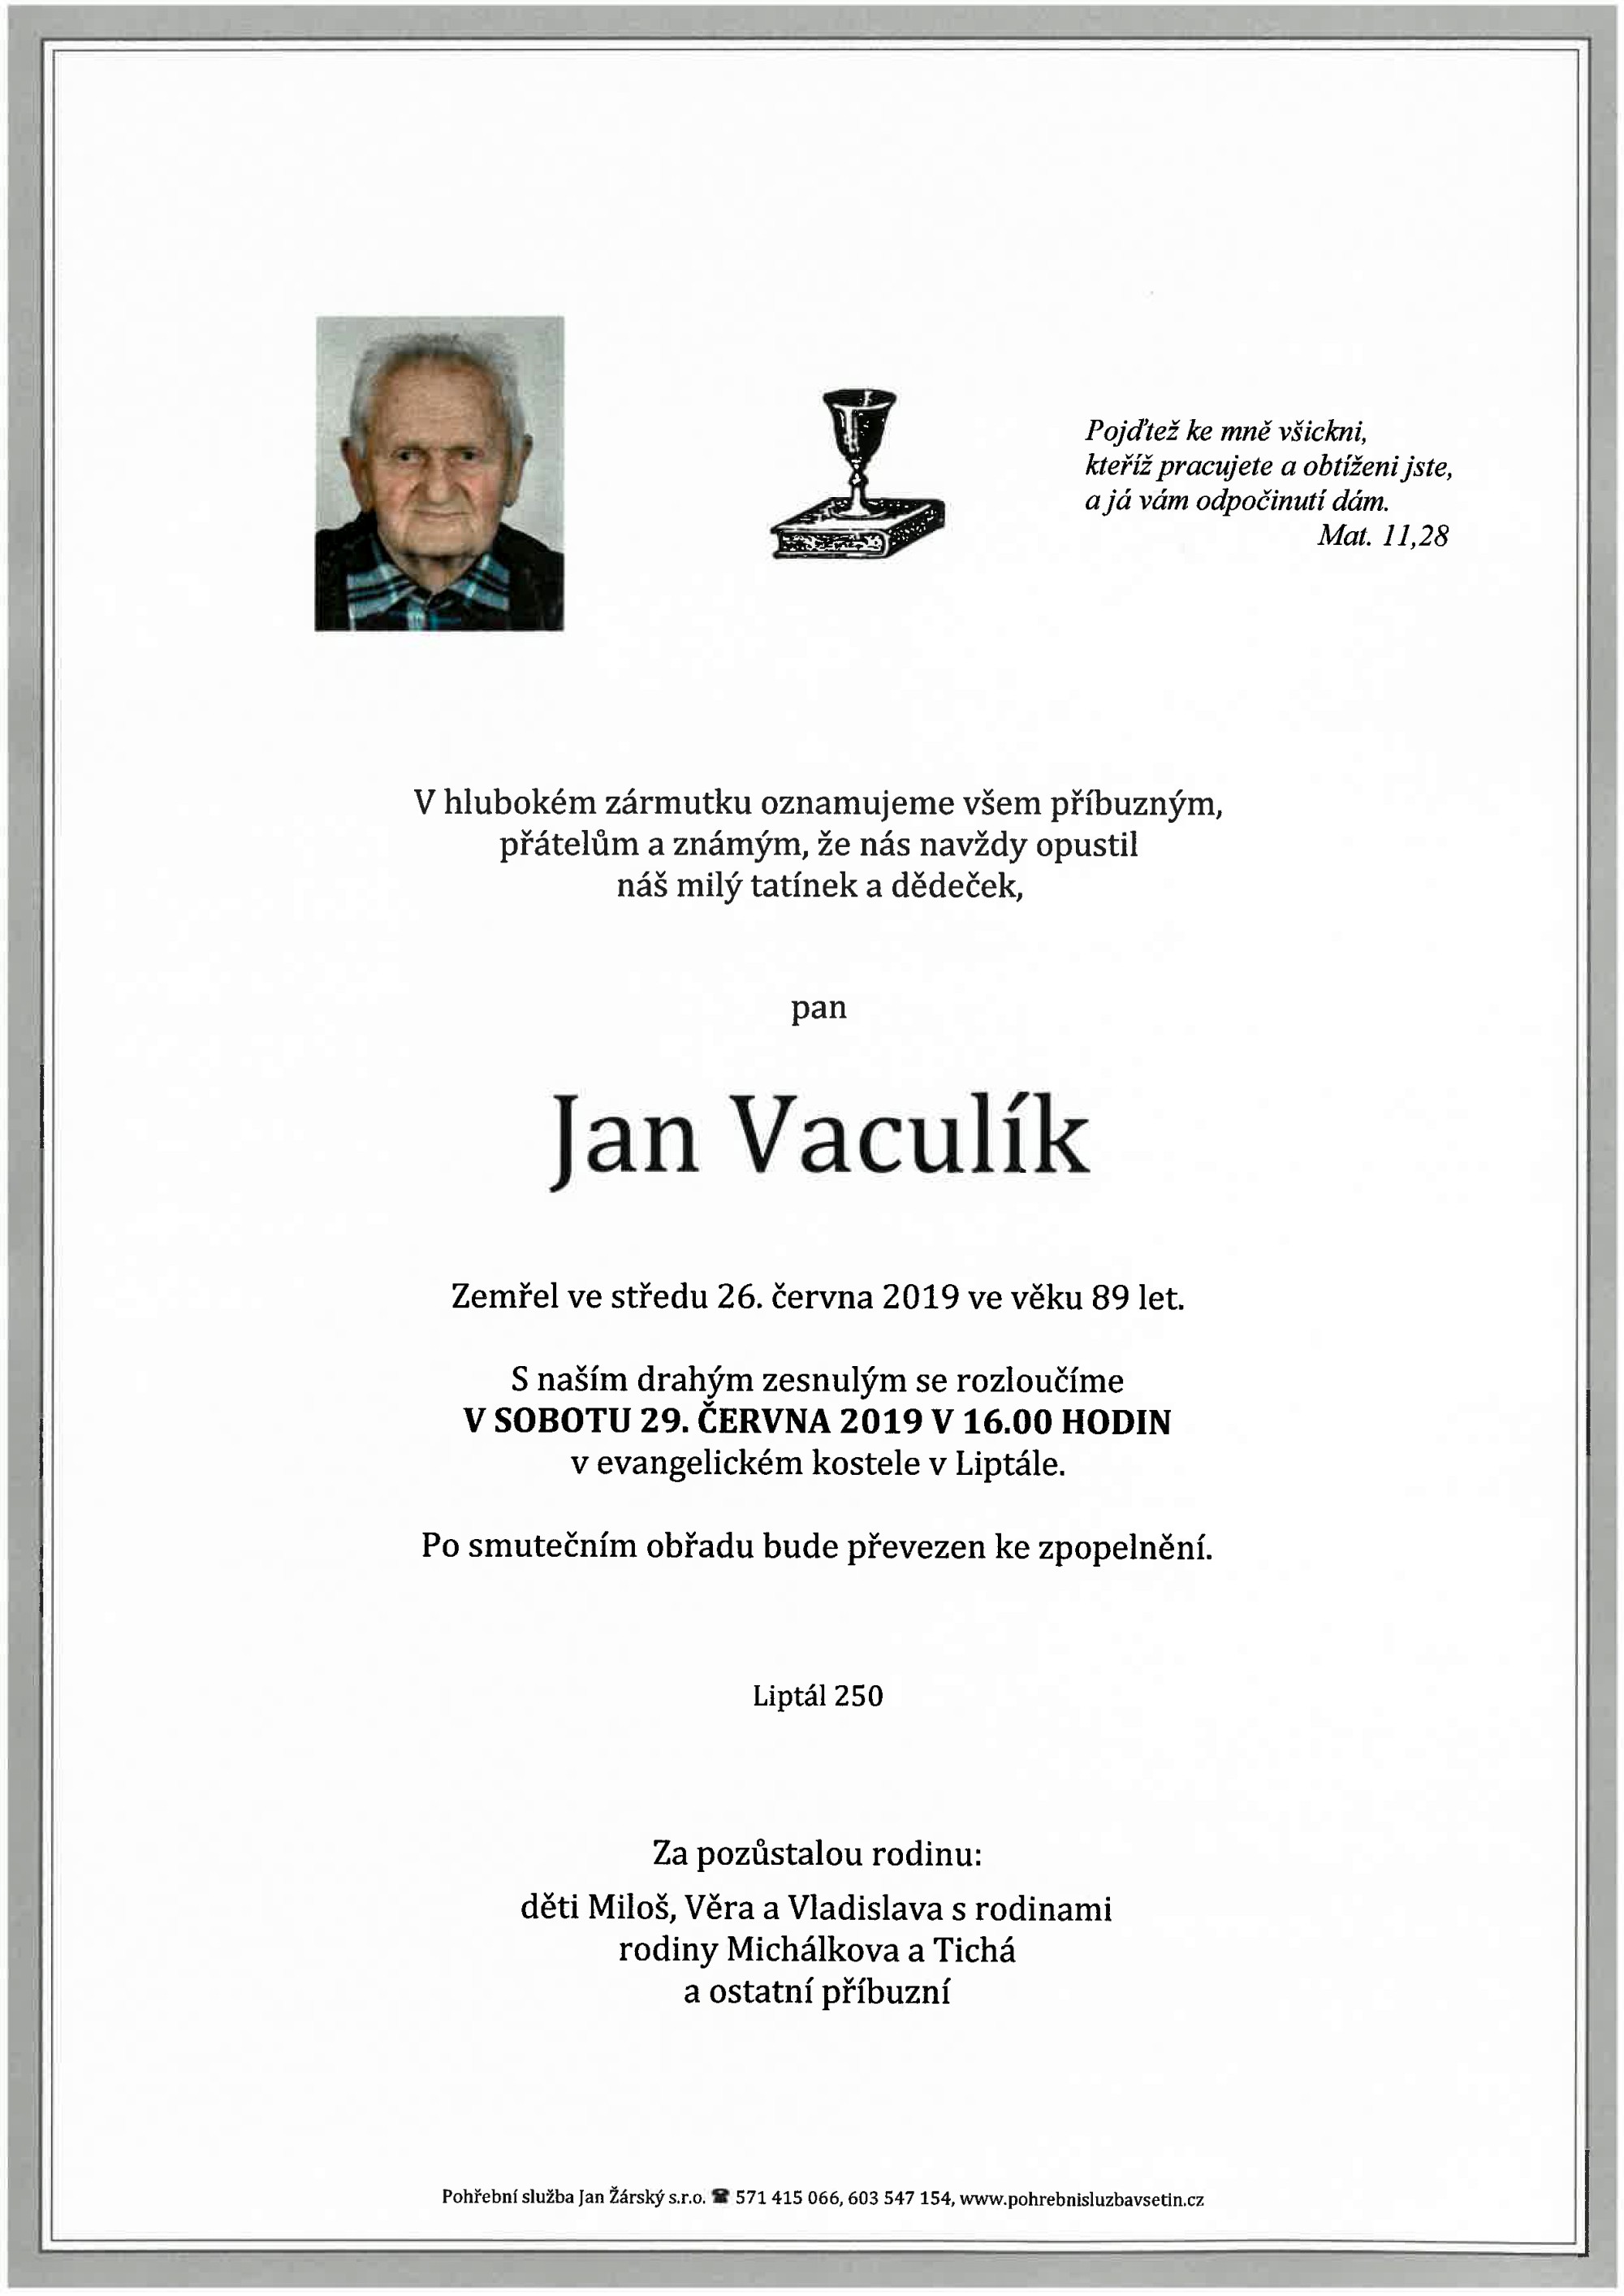 Jan Vaculík